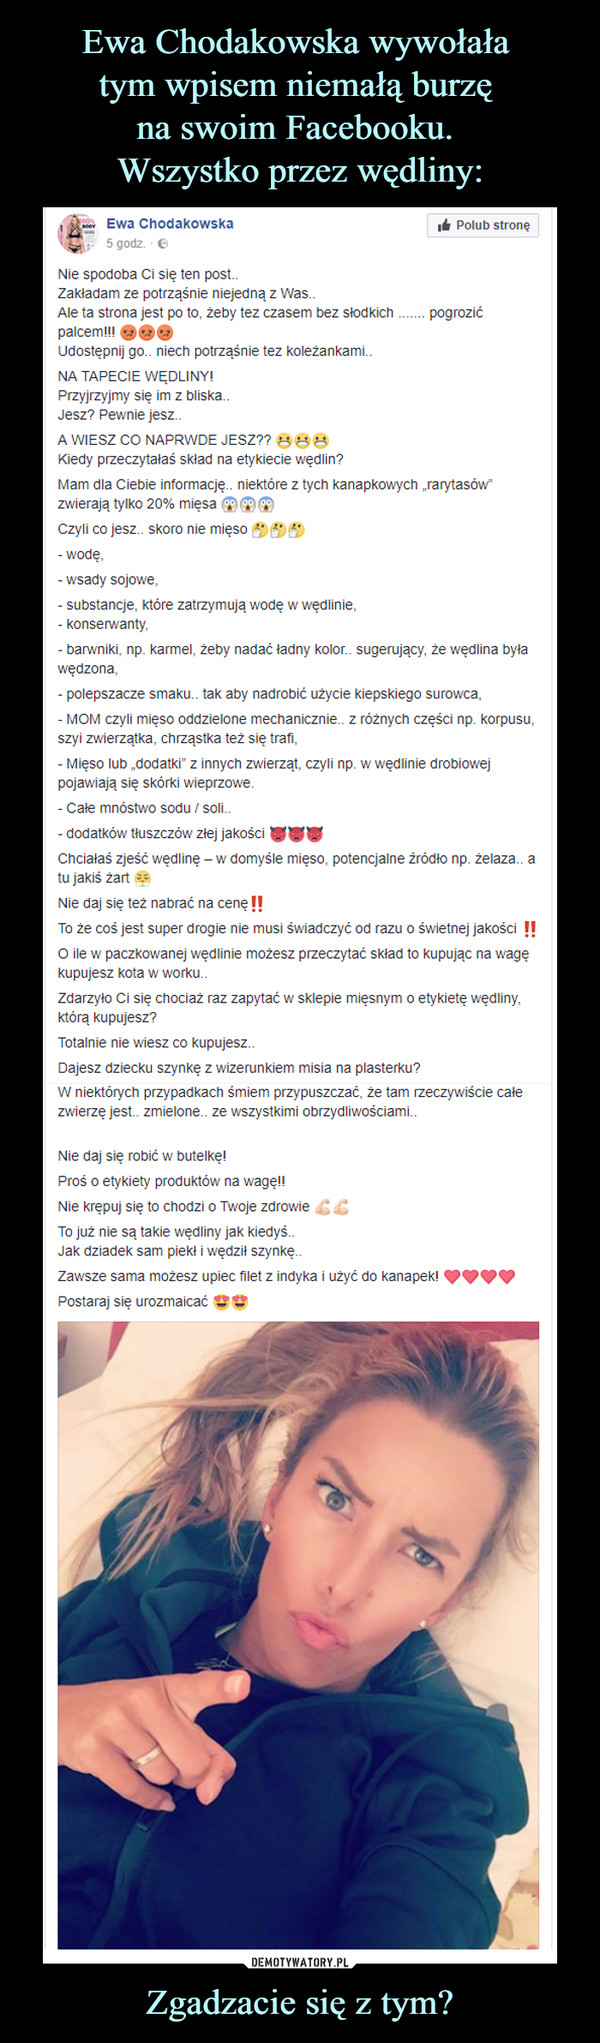 Ewa Chodakowska wywołała 
tym wpisem niemałą burzę 
na swoim Facebooku. 
Wszystko przez wędliny: Zgadzacie się z tym?